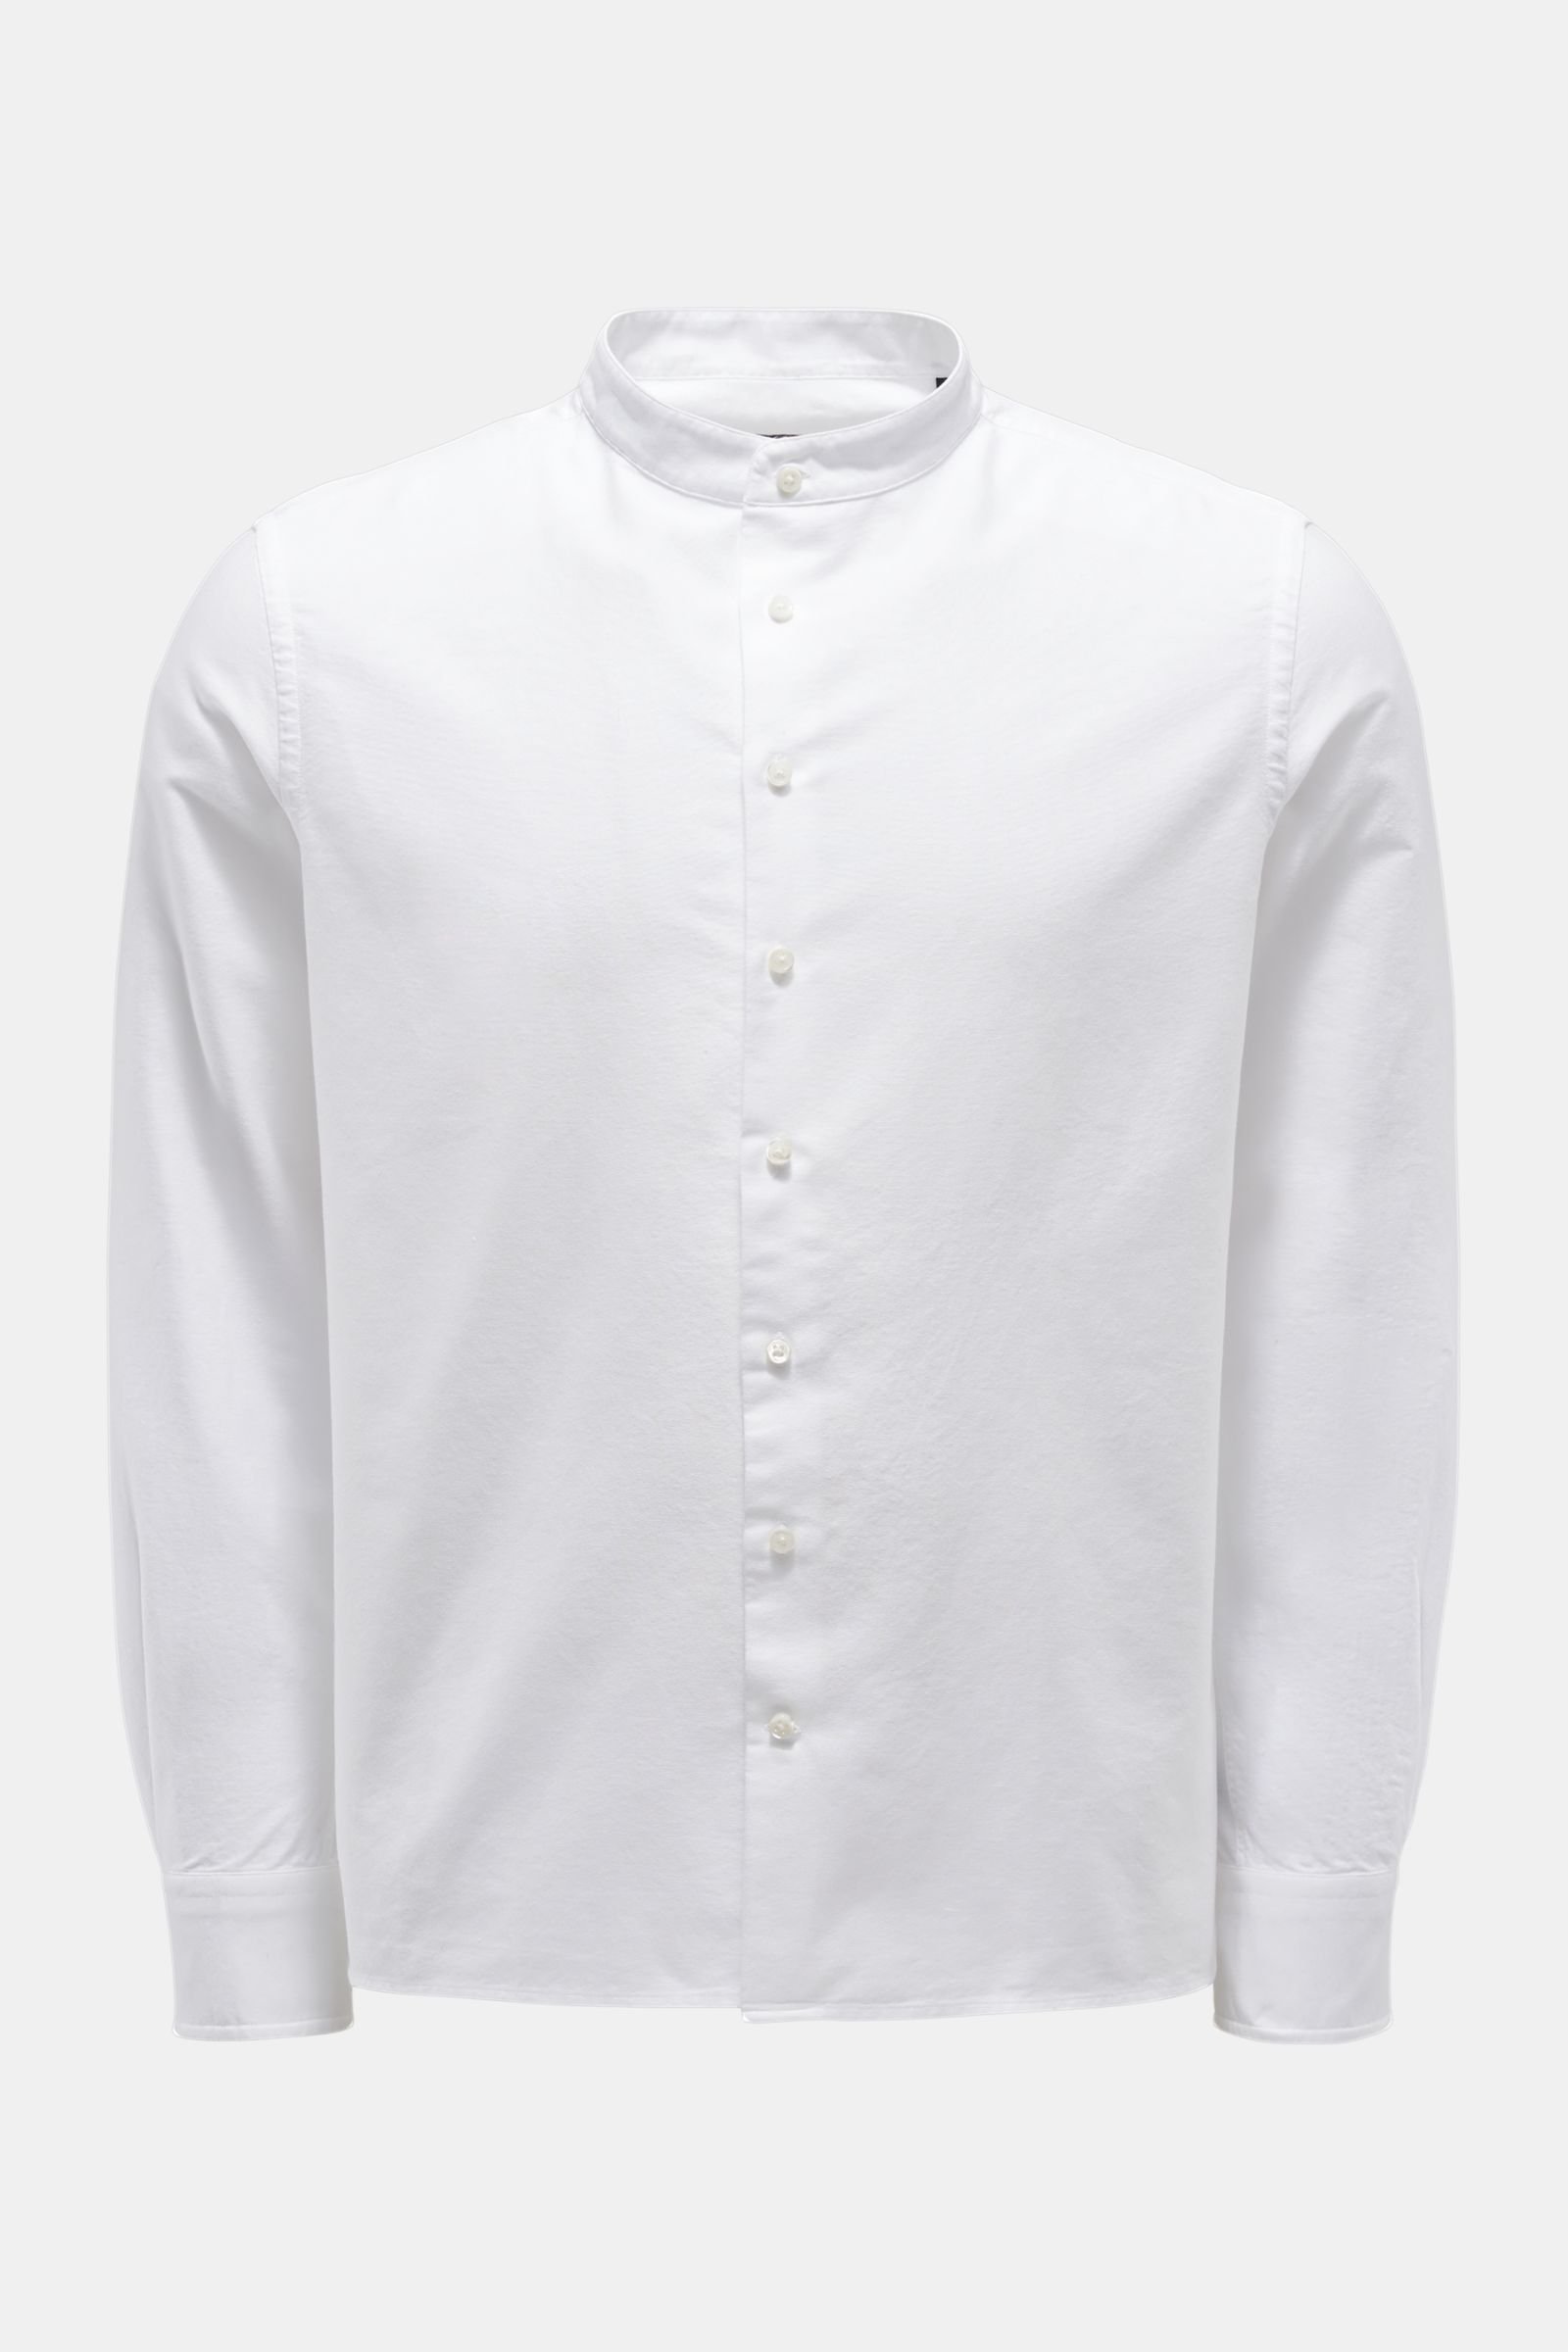 Oxfordhemd Grandad-Kragen weiß